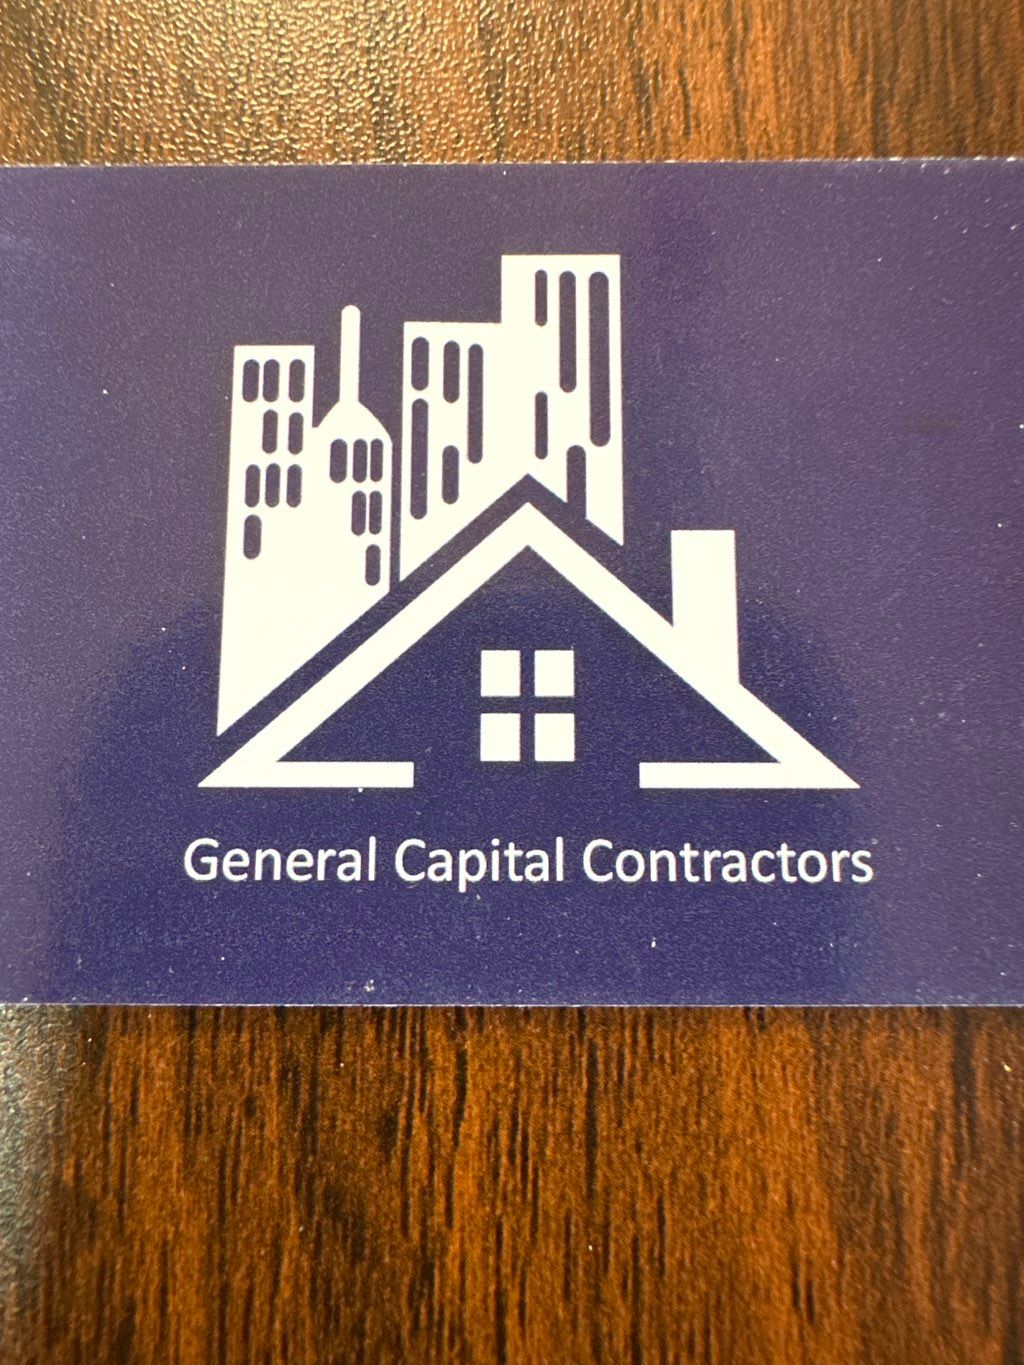 General Capital Contractors